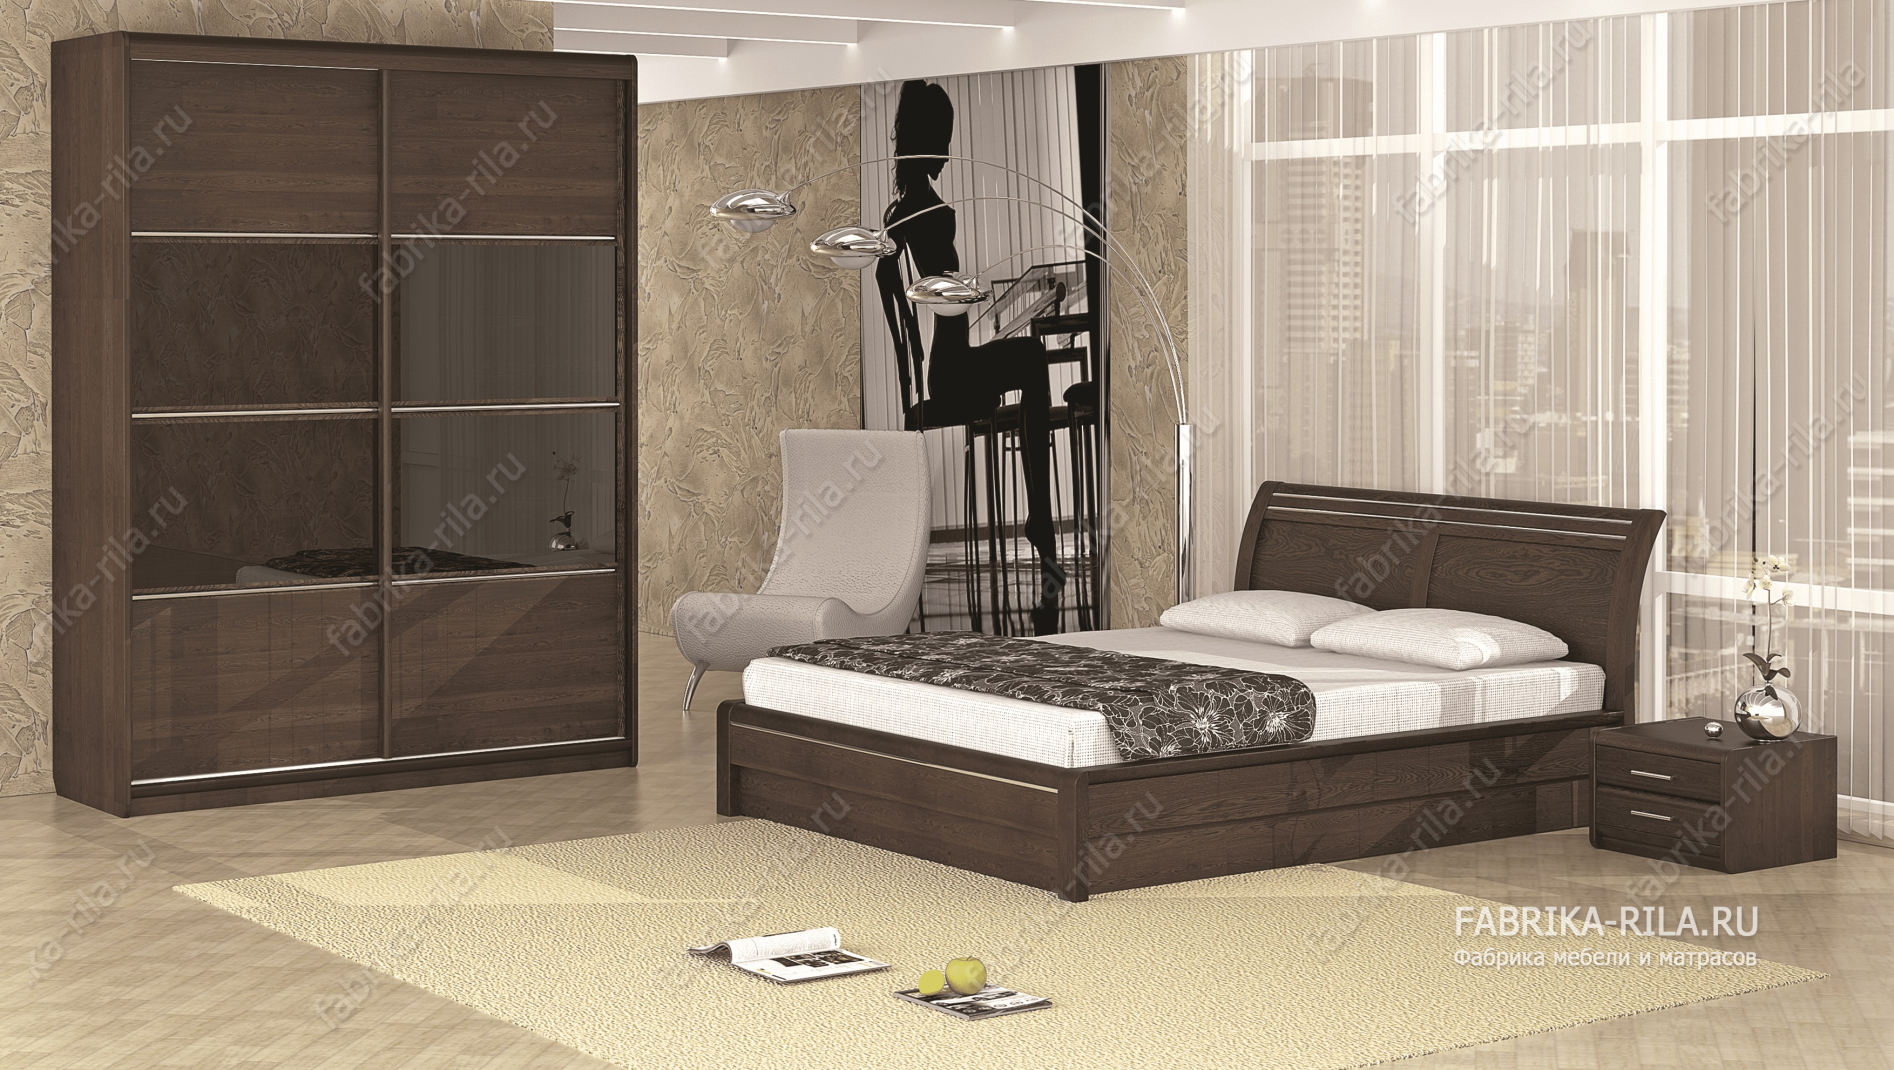 Кровать Okaeri 2 — 90x190 см. из сосны